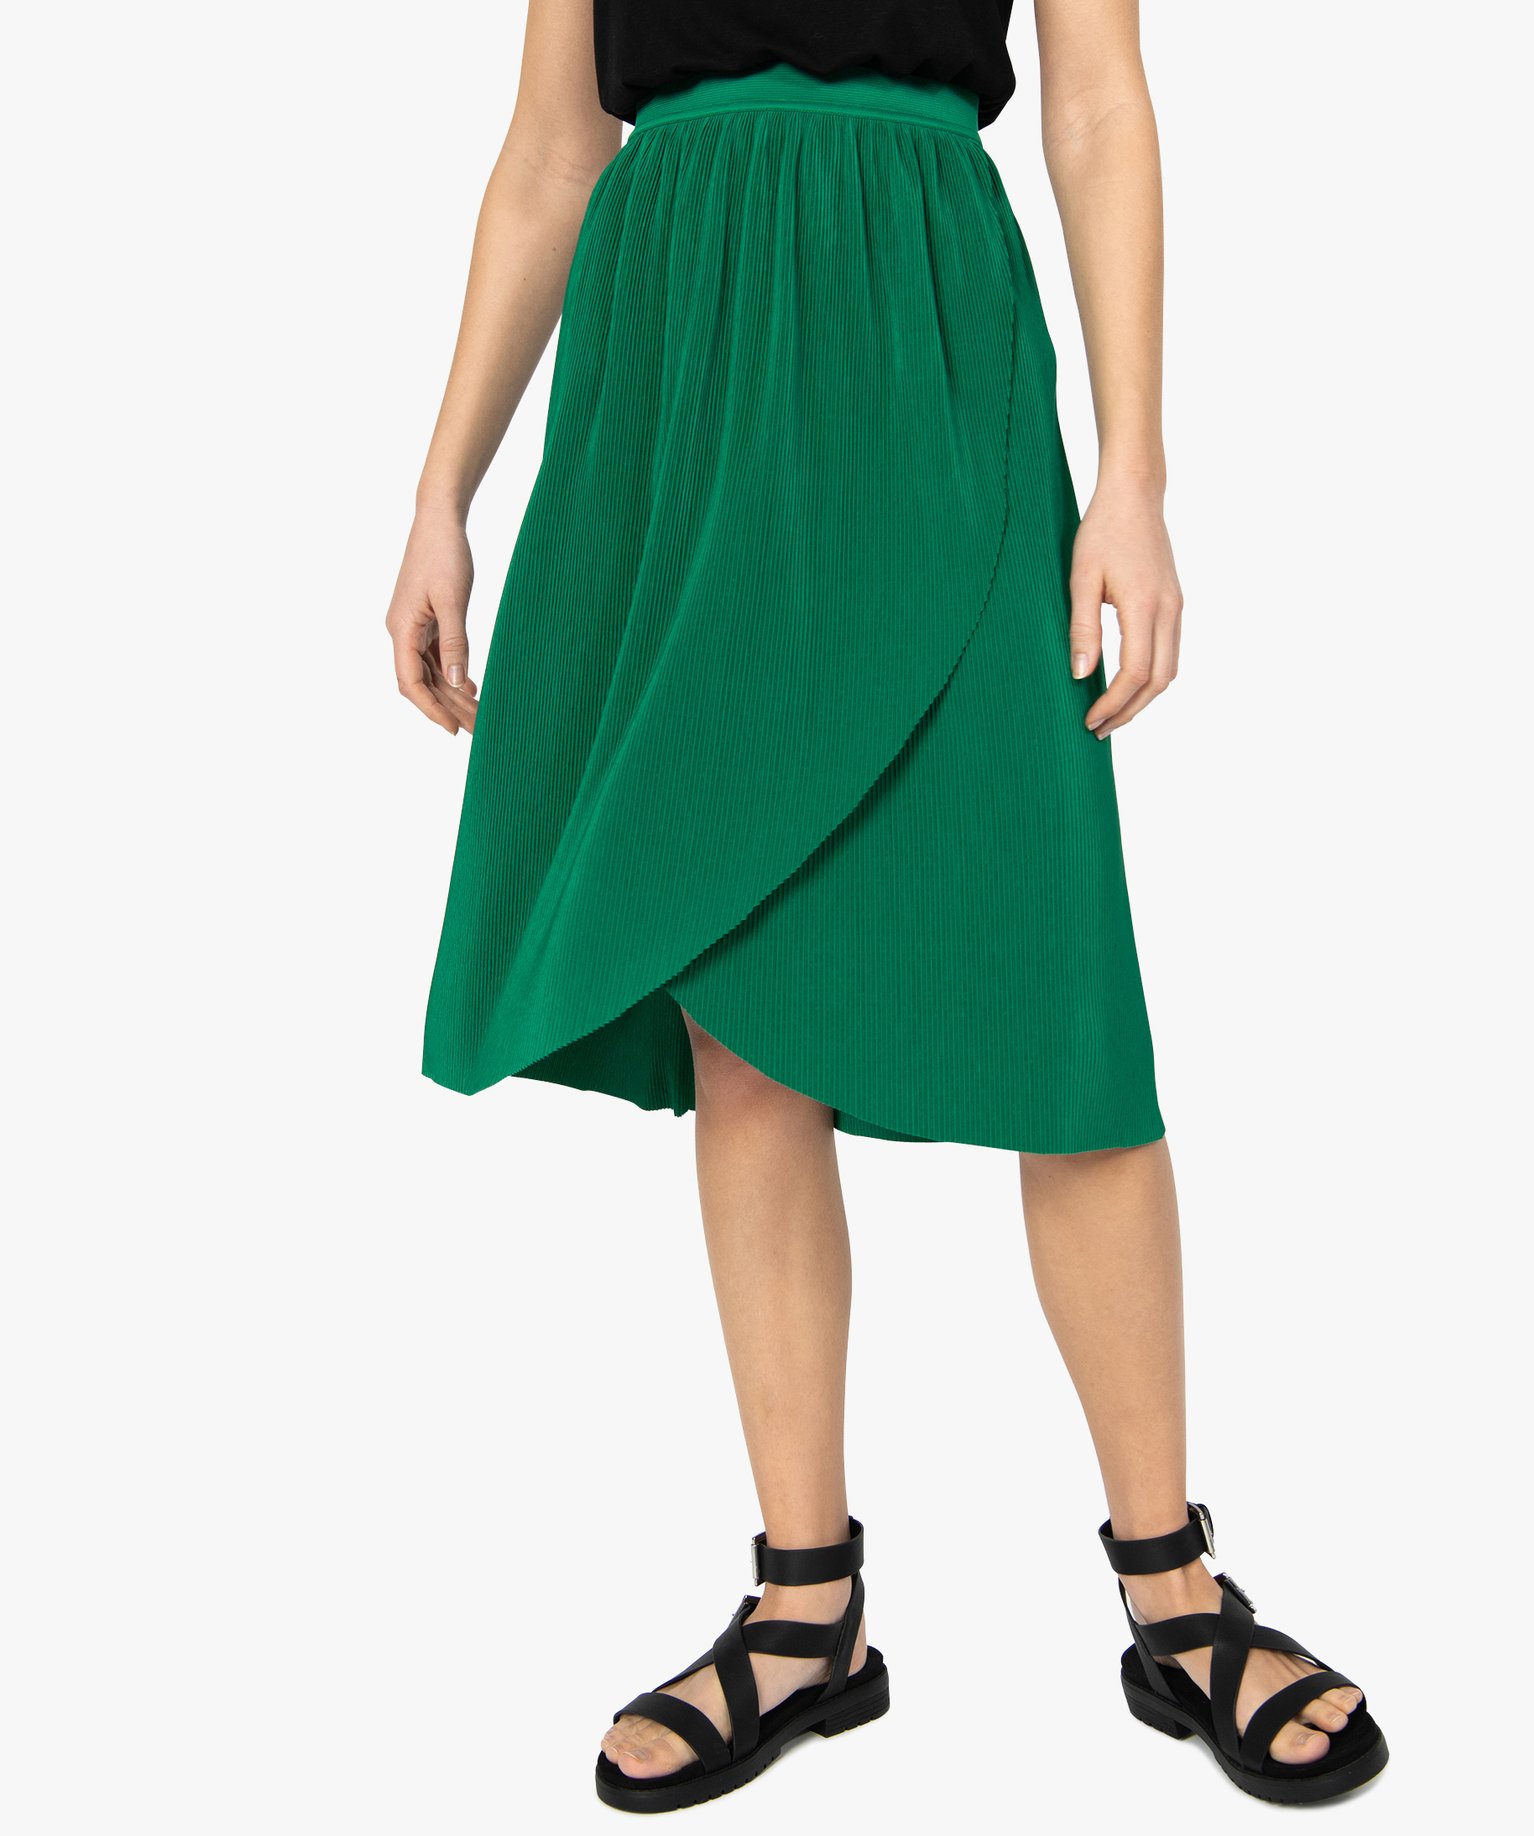 Gemo vetements jupe femme plissee forme portefeuille vert jupes femme | GÉMO